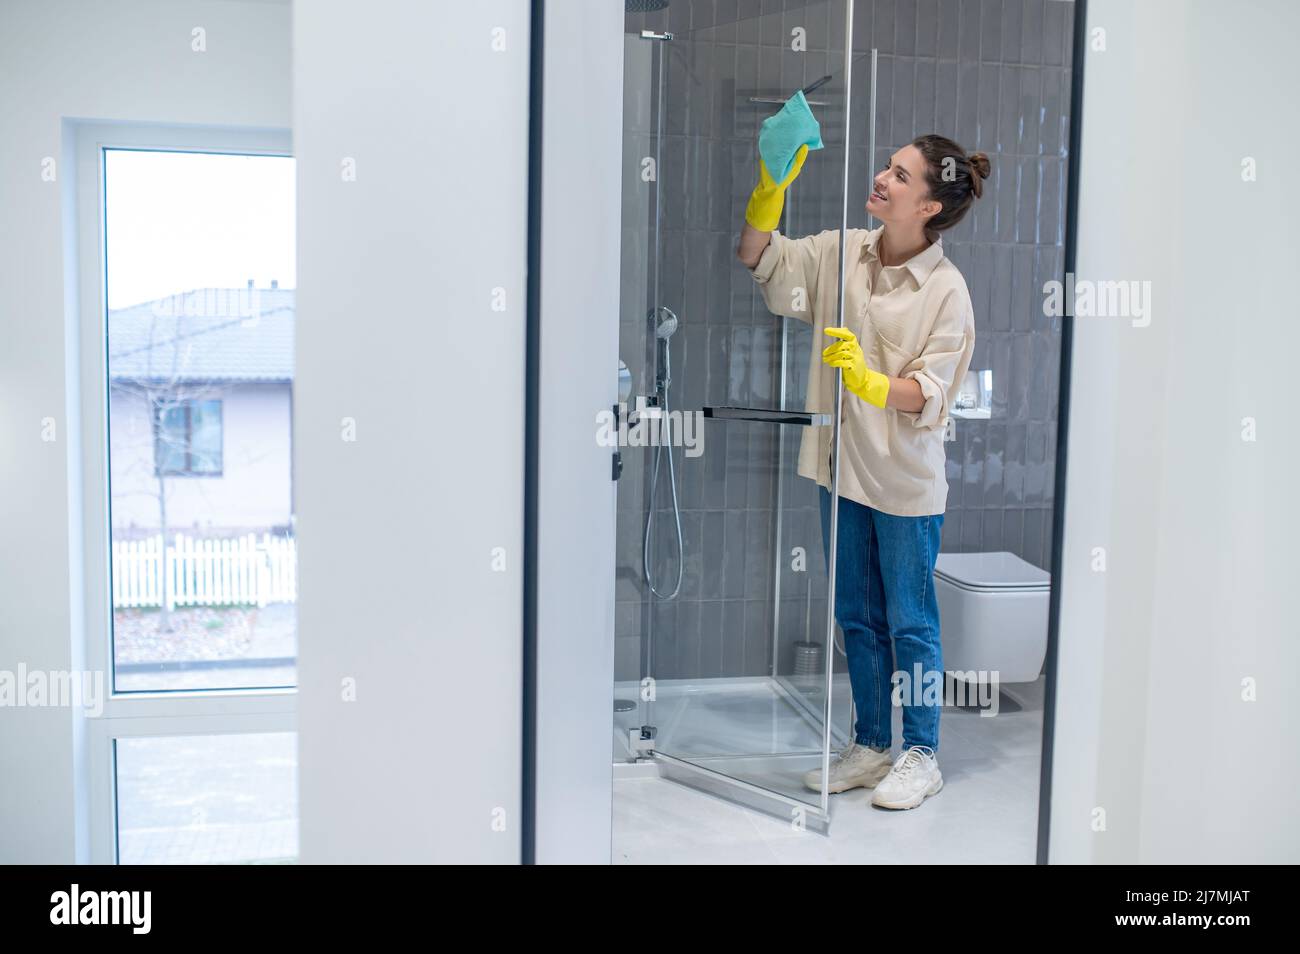 Une jeune femme nettoie la cabine de douche à la maison et a l'air occupée Banque D'Images